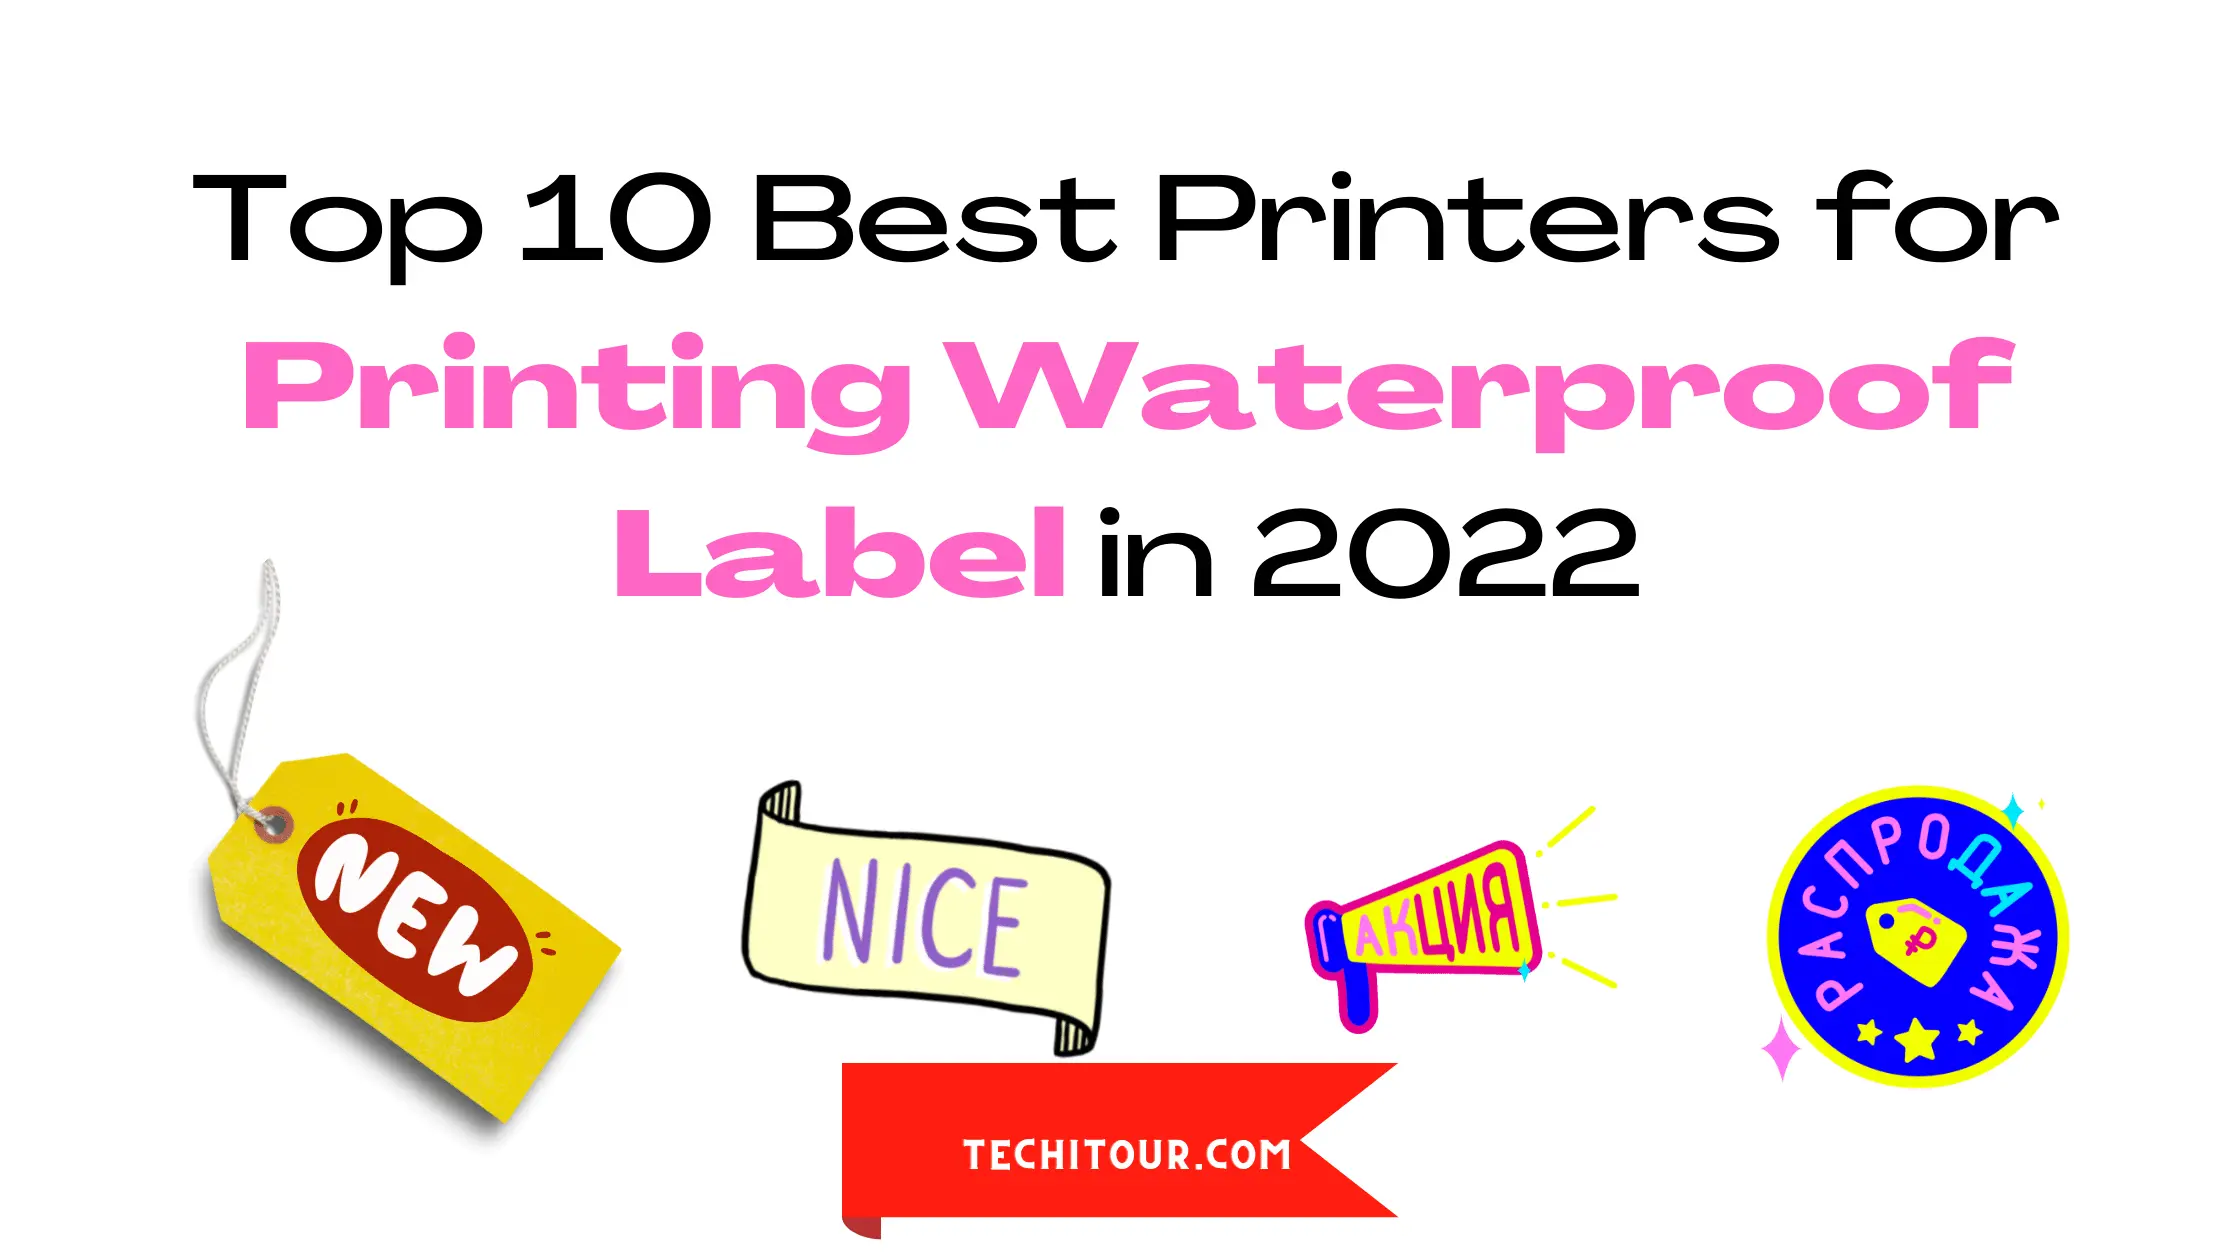 Top 10 Best Printers for Printing Waterproof Label in 2022